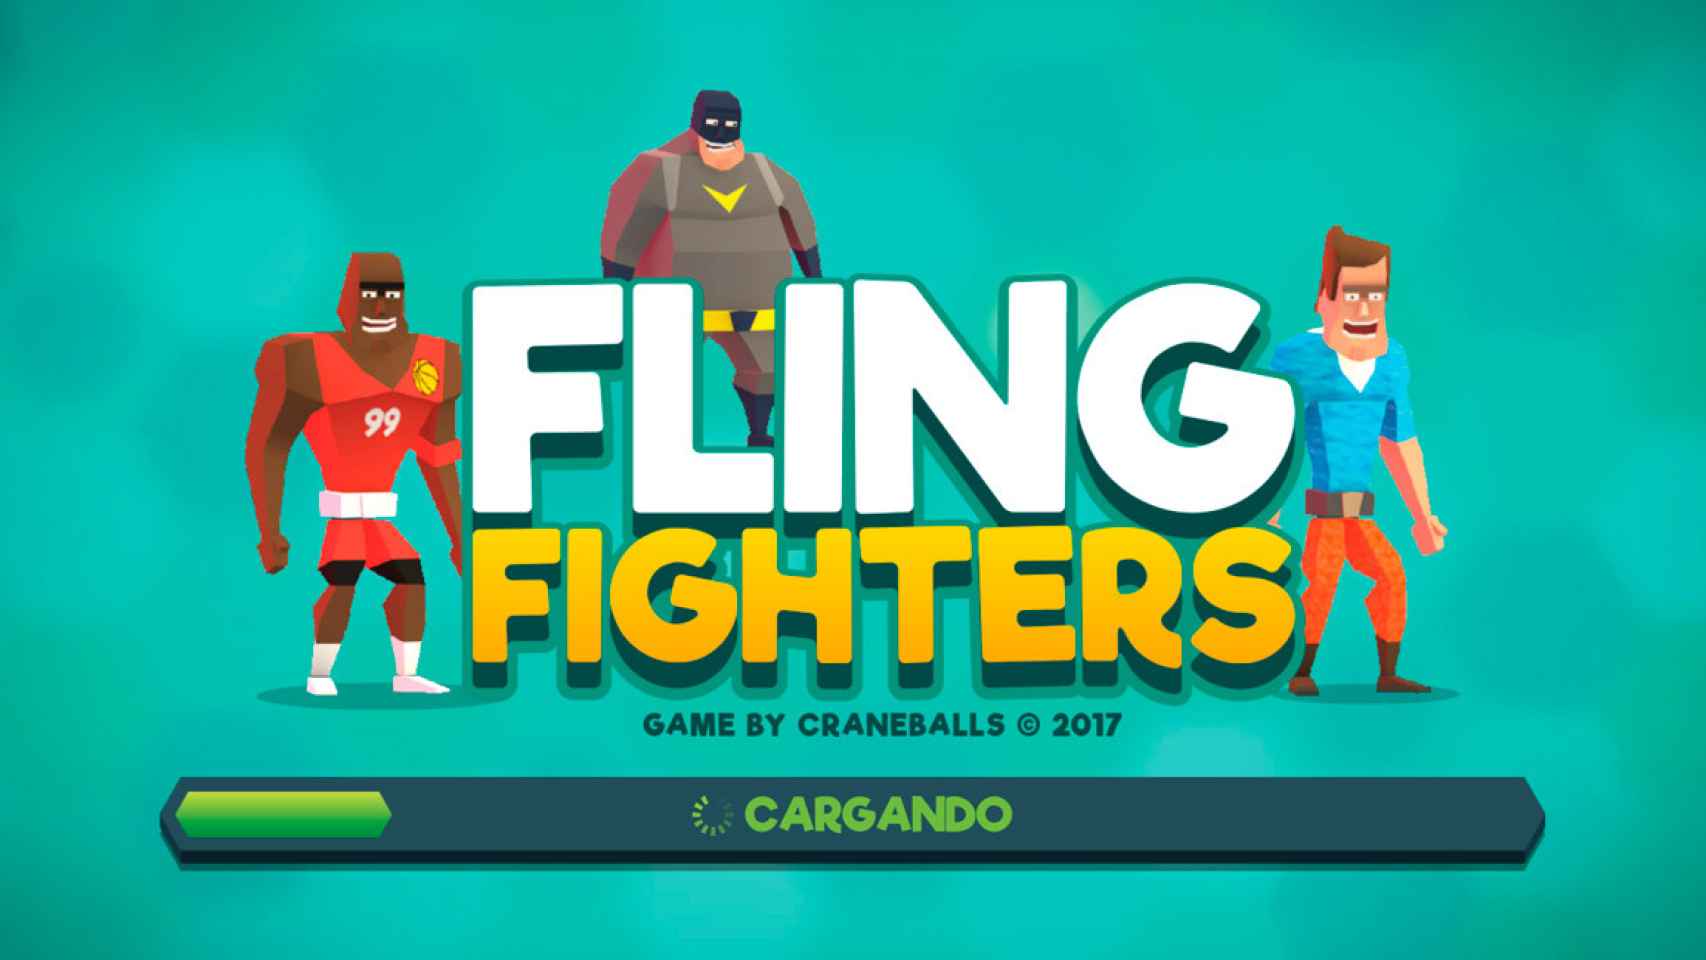 Luchas ridículas en 3D y multijugador: Fling Fighters es maravilloso